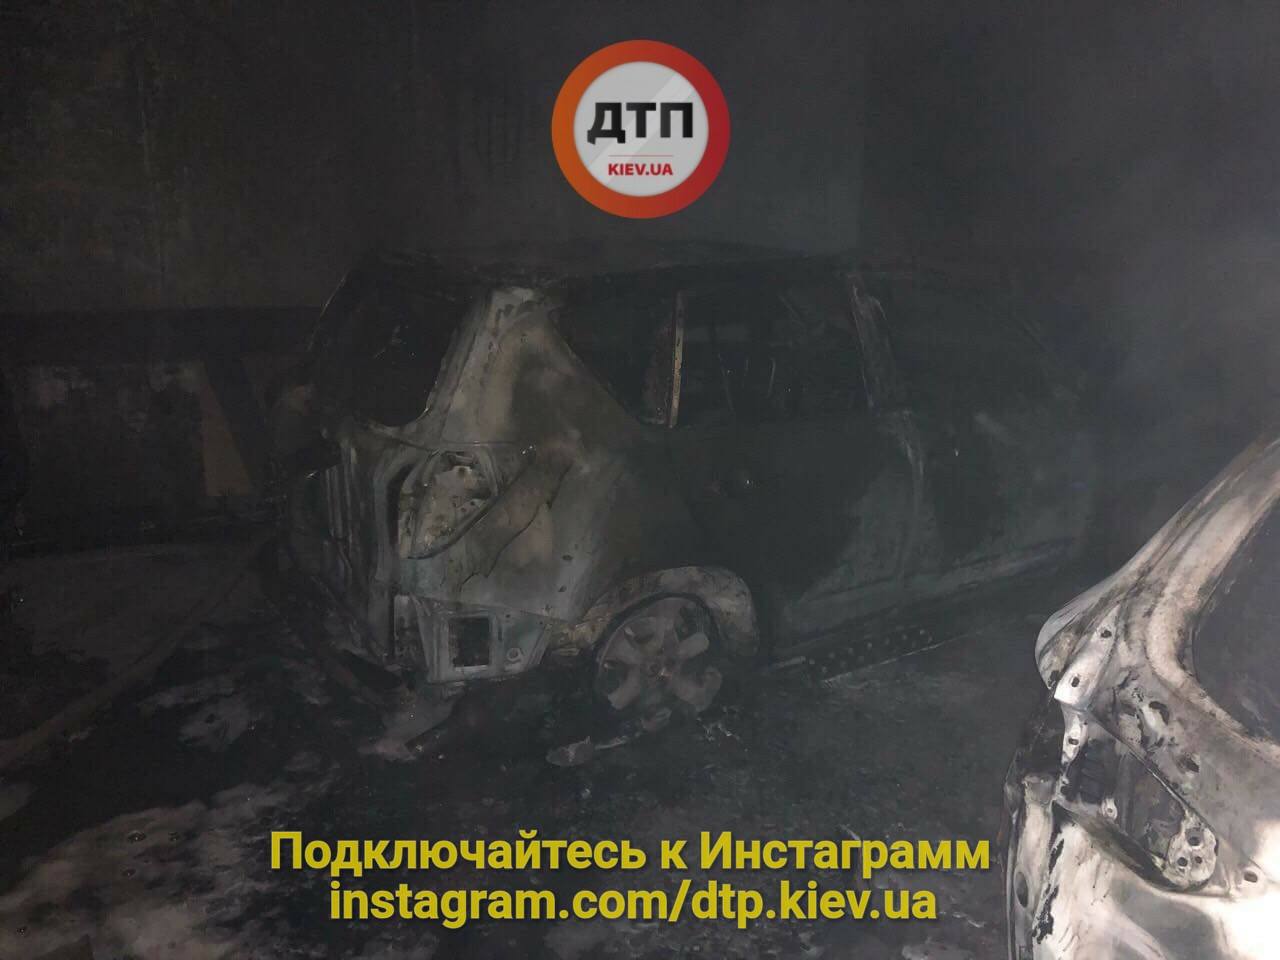 В Киеве на подземной парковке сгорели пять авто, опубликованы фото